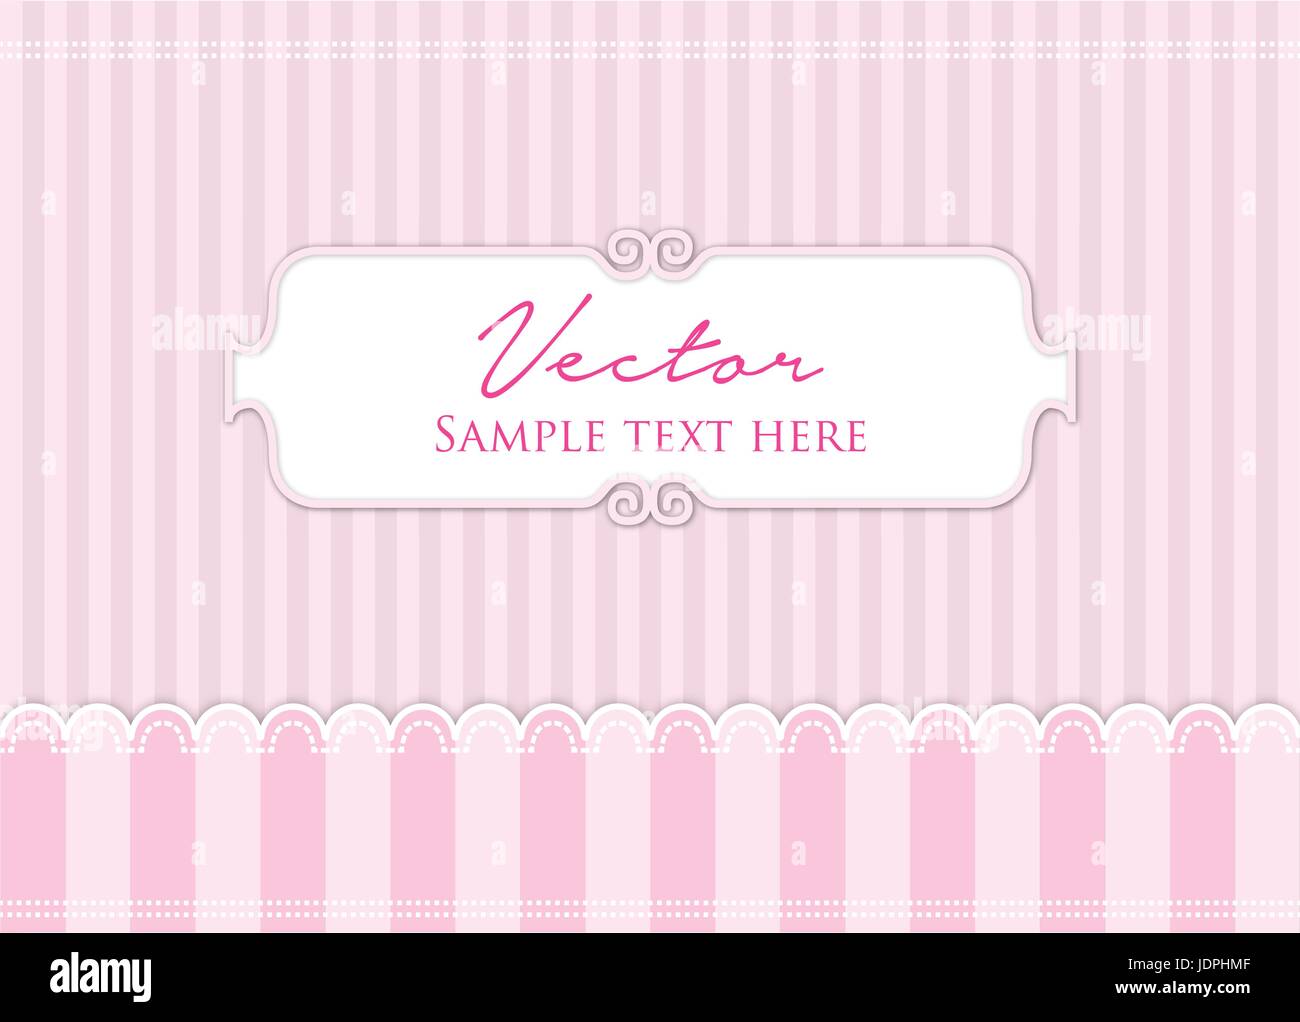 Pinky vector vectors Stock Vector Images - Alamy